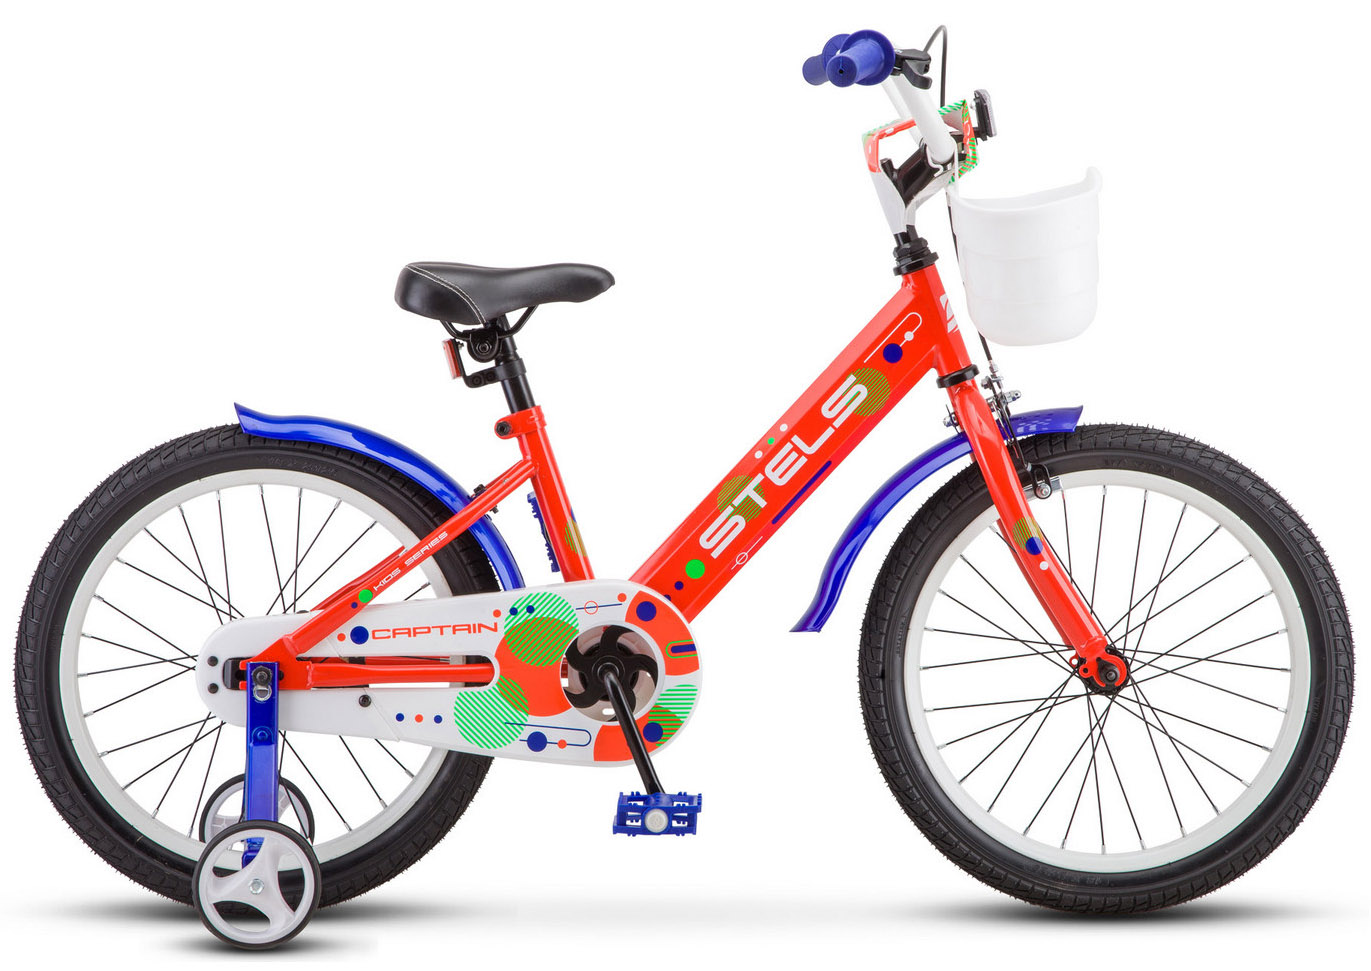  Отзывы о Детском велосипеде Stels Captain 18 V010 2020